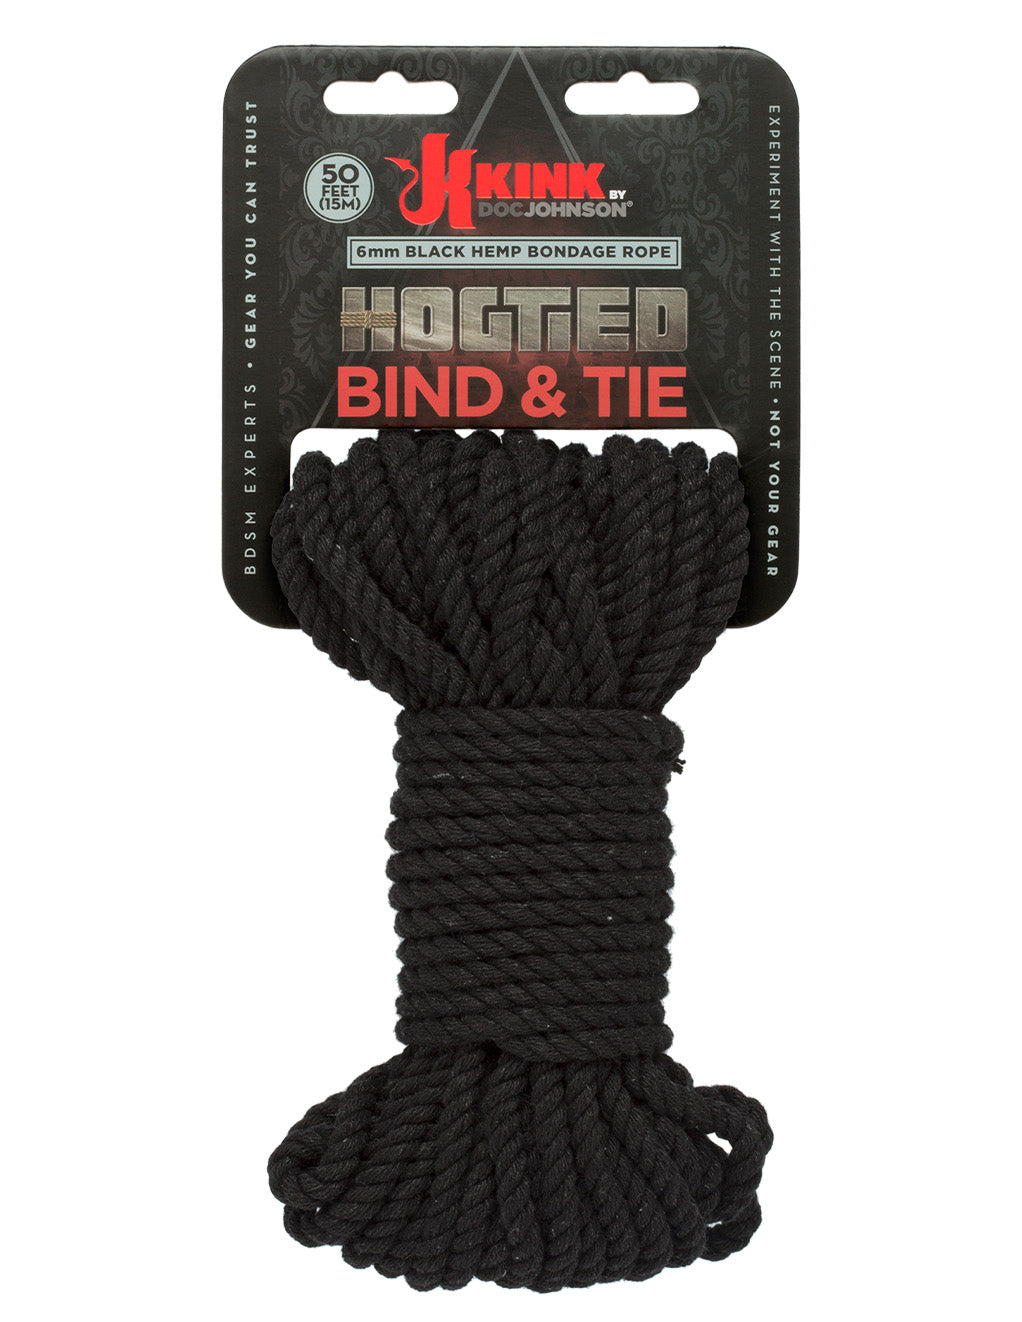 Kink Bind & Tie Hemp Rope 50 Feet- Black- Package